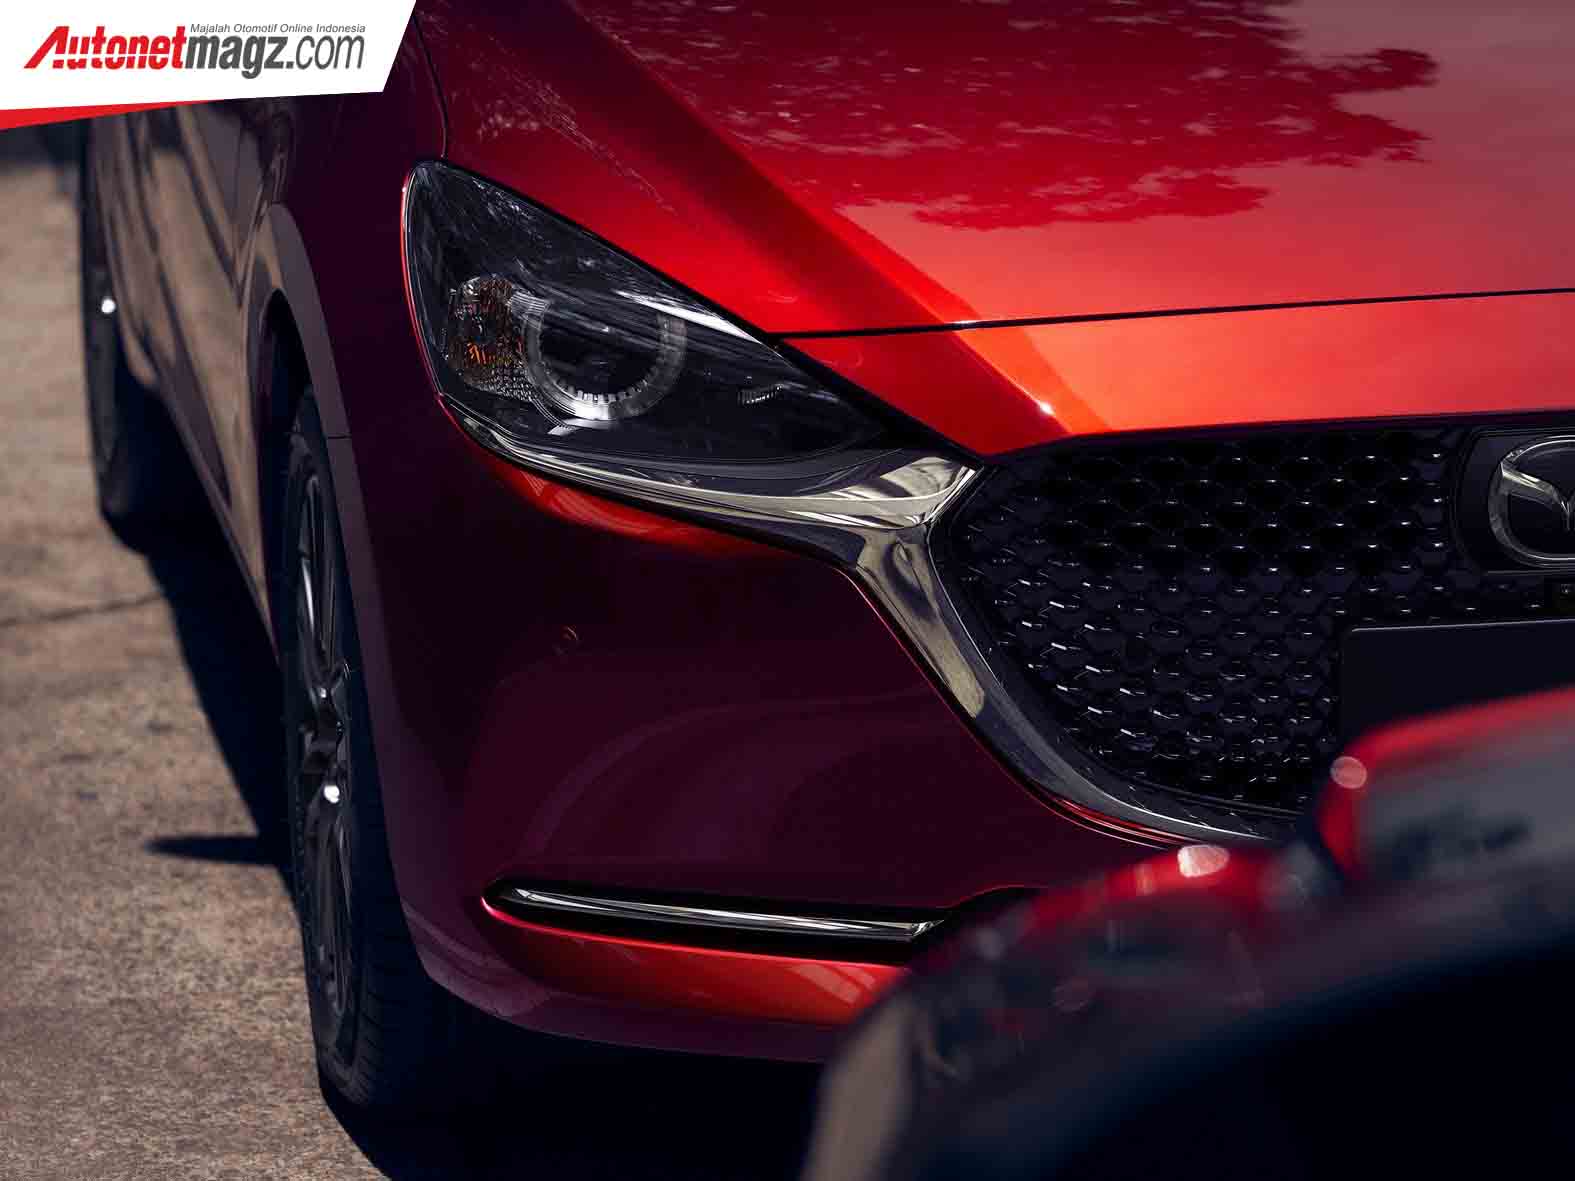 Berita, Spesifikasi Mazda2 Facelift: Mazda2 Facelift : Pakai Desain Kodo 2.0 & Tambah Fitur!